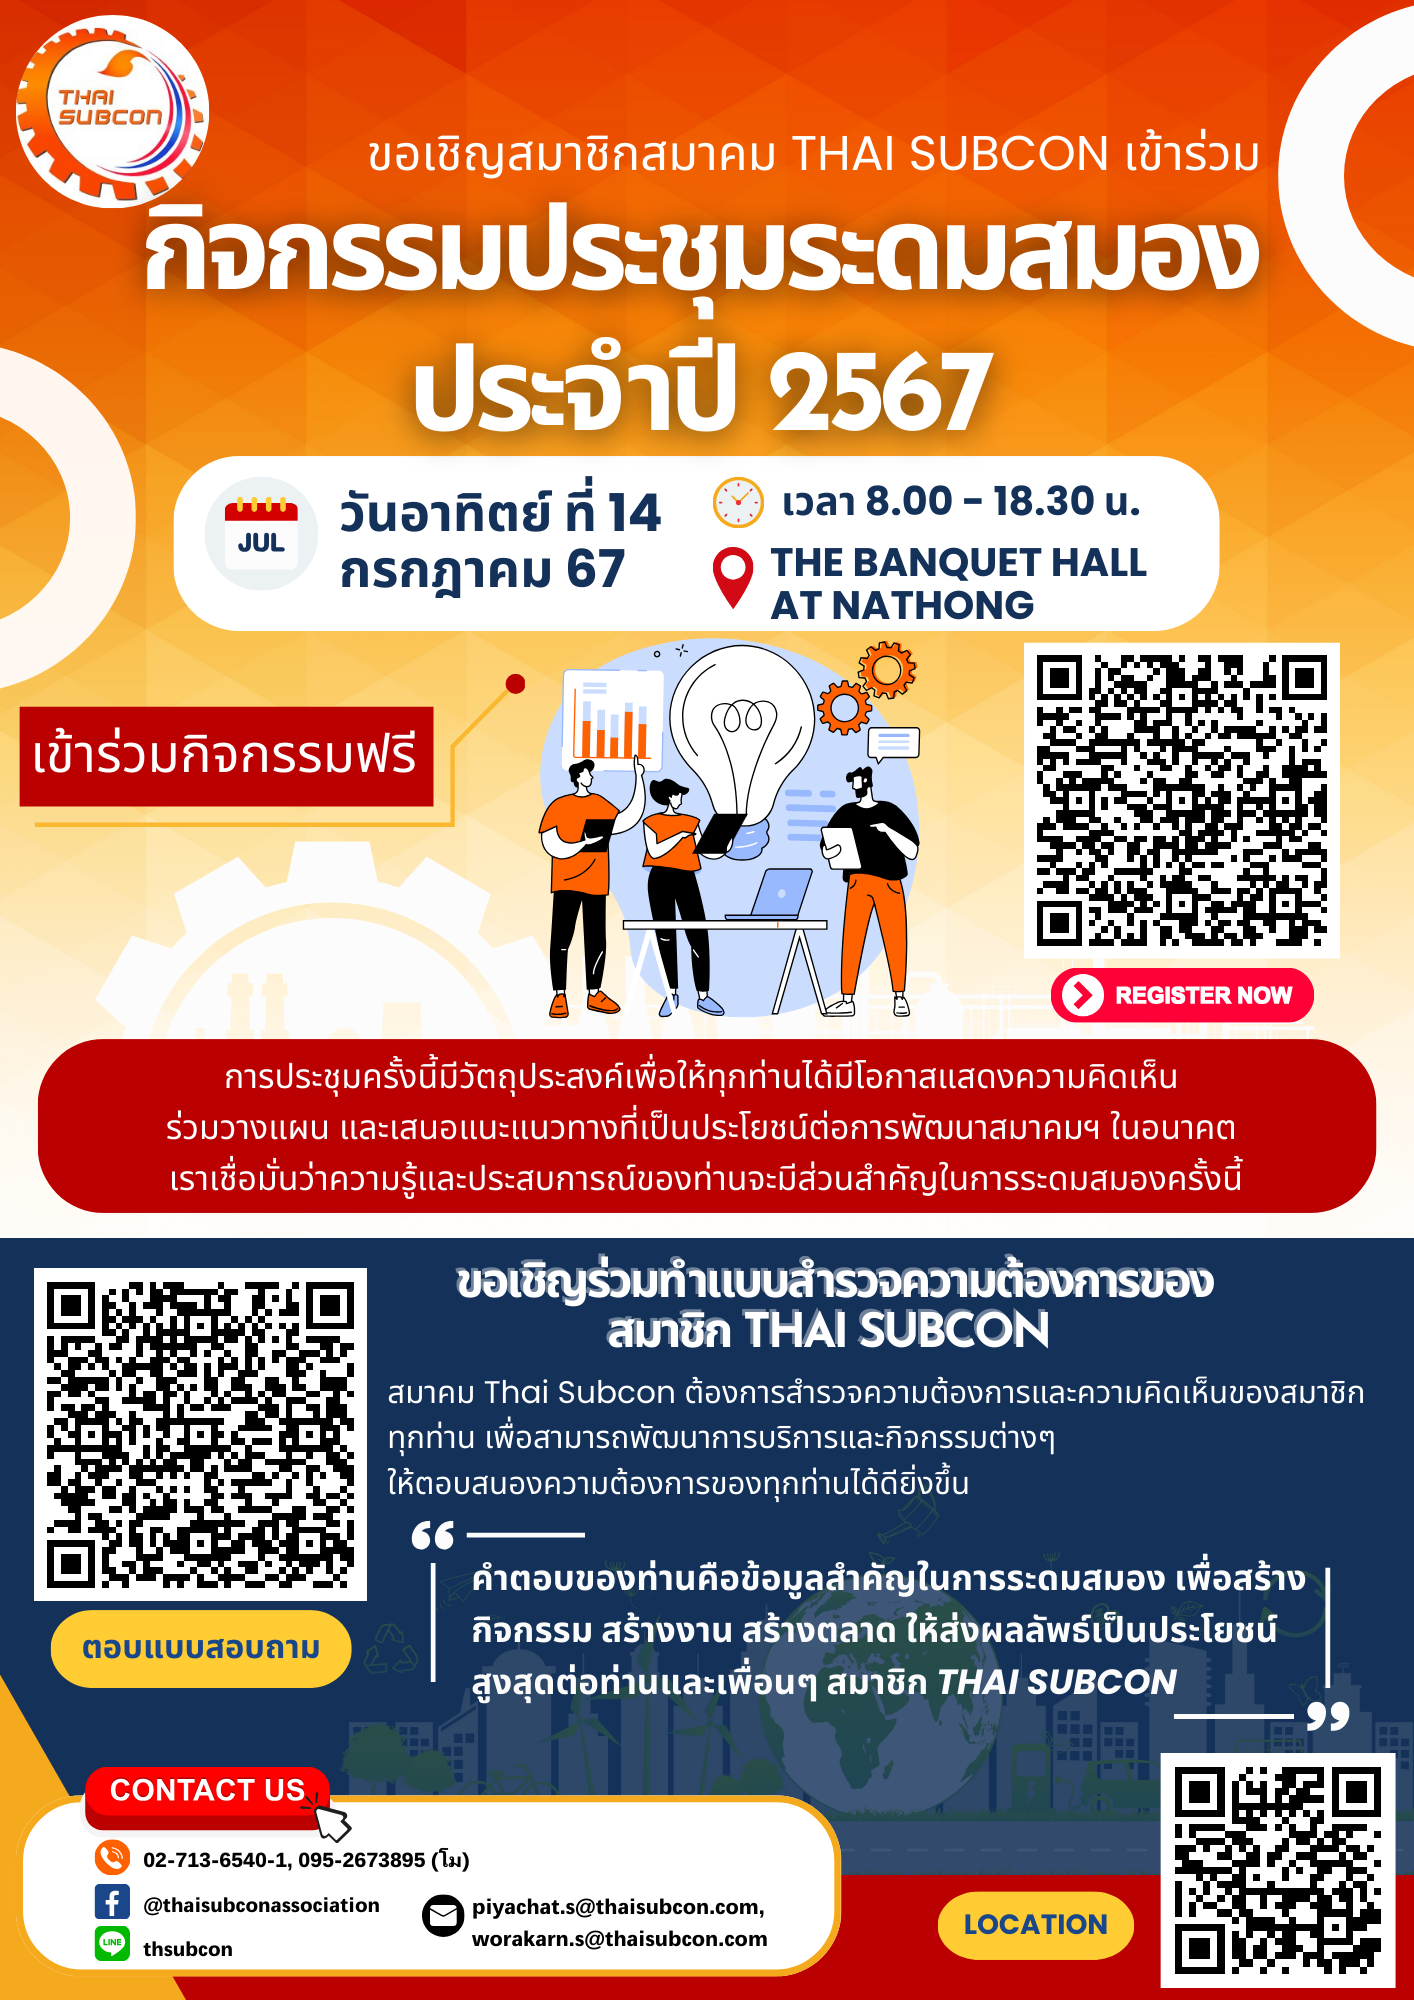 ขอเชิญสมาชิกสมาคม Thai Subcon ทุกท่านเข้าร่วมกิจกรรมประชุมระดมสมอง